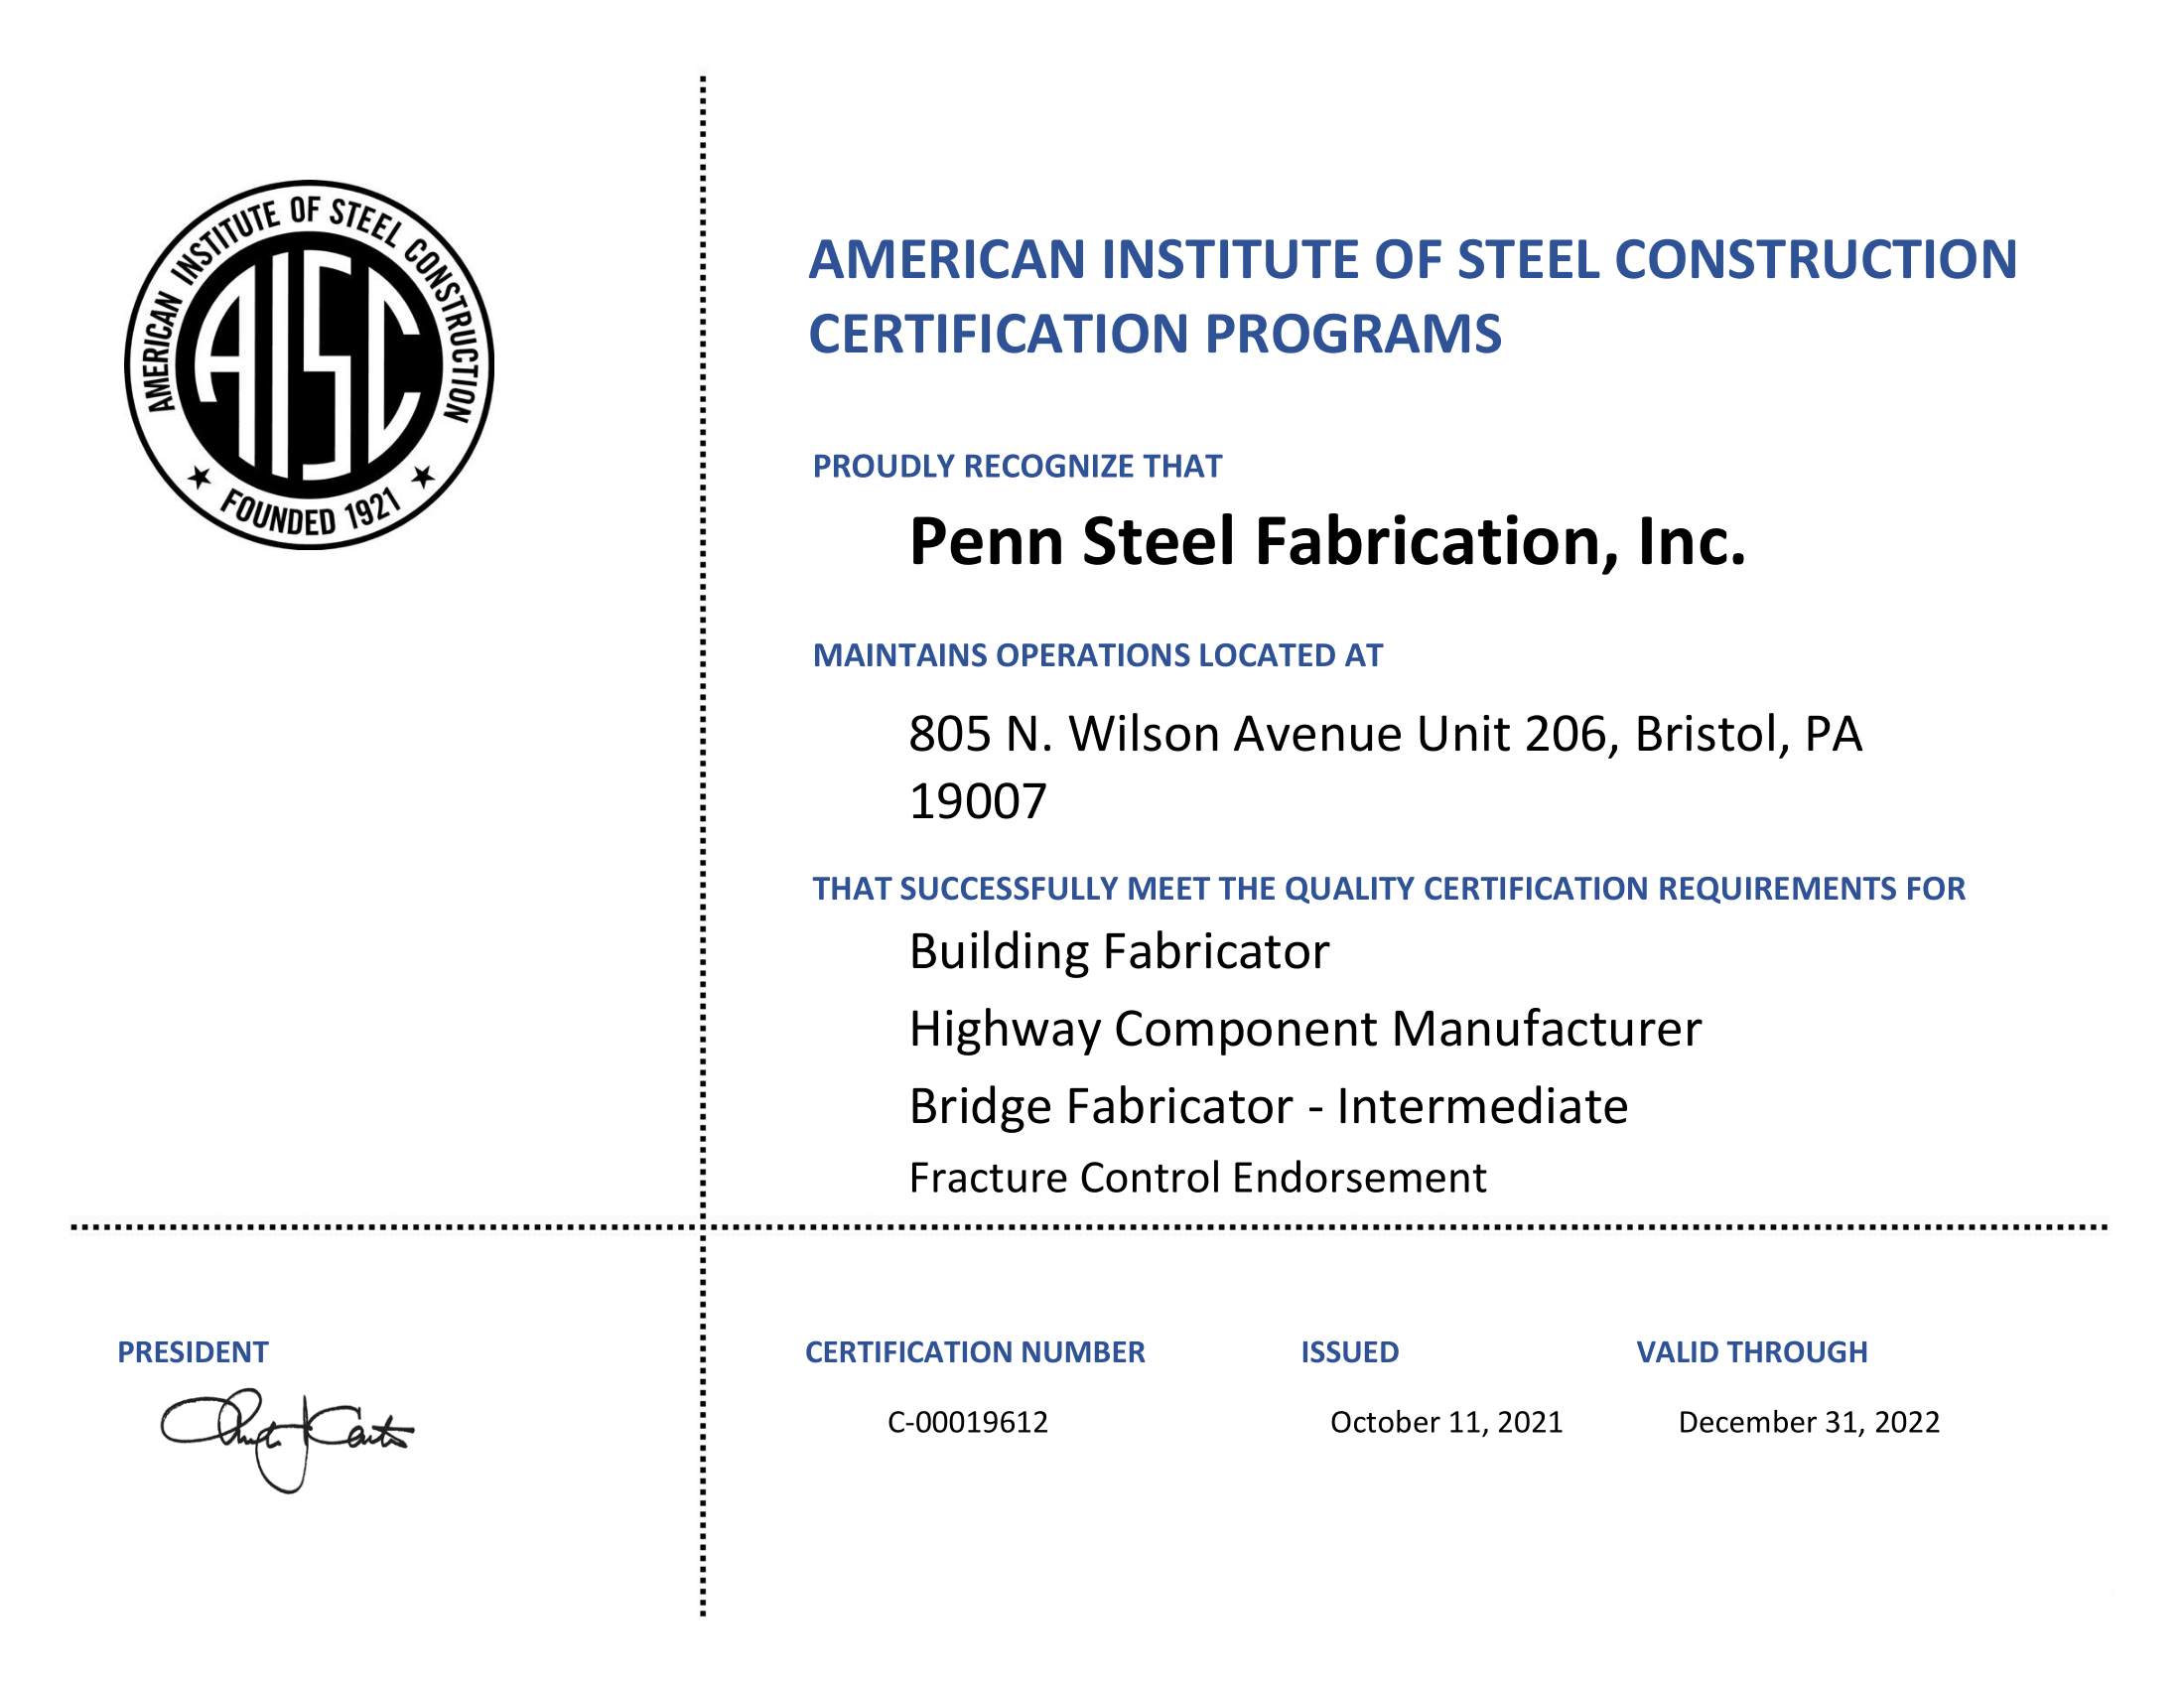 Penn Steel Fabrication CEPA